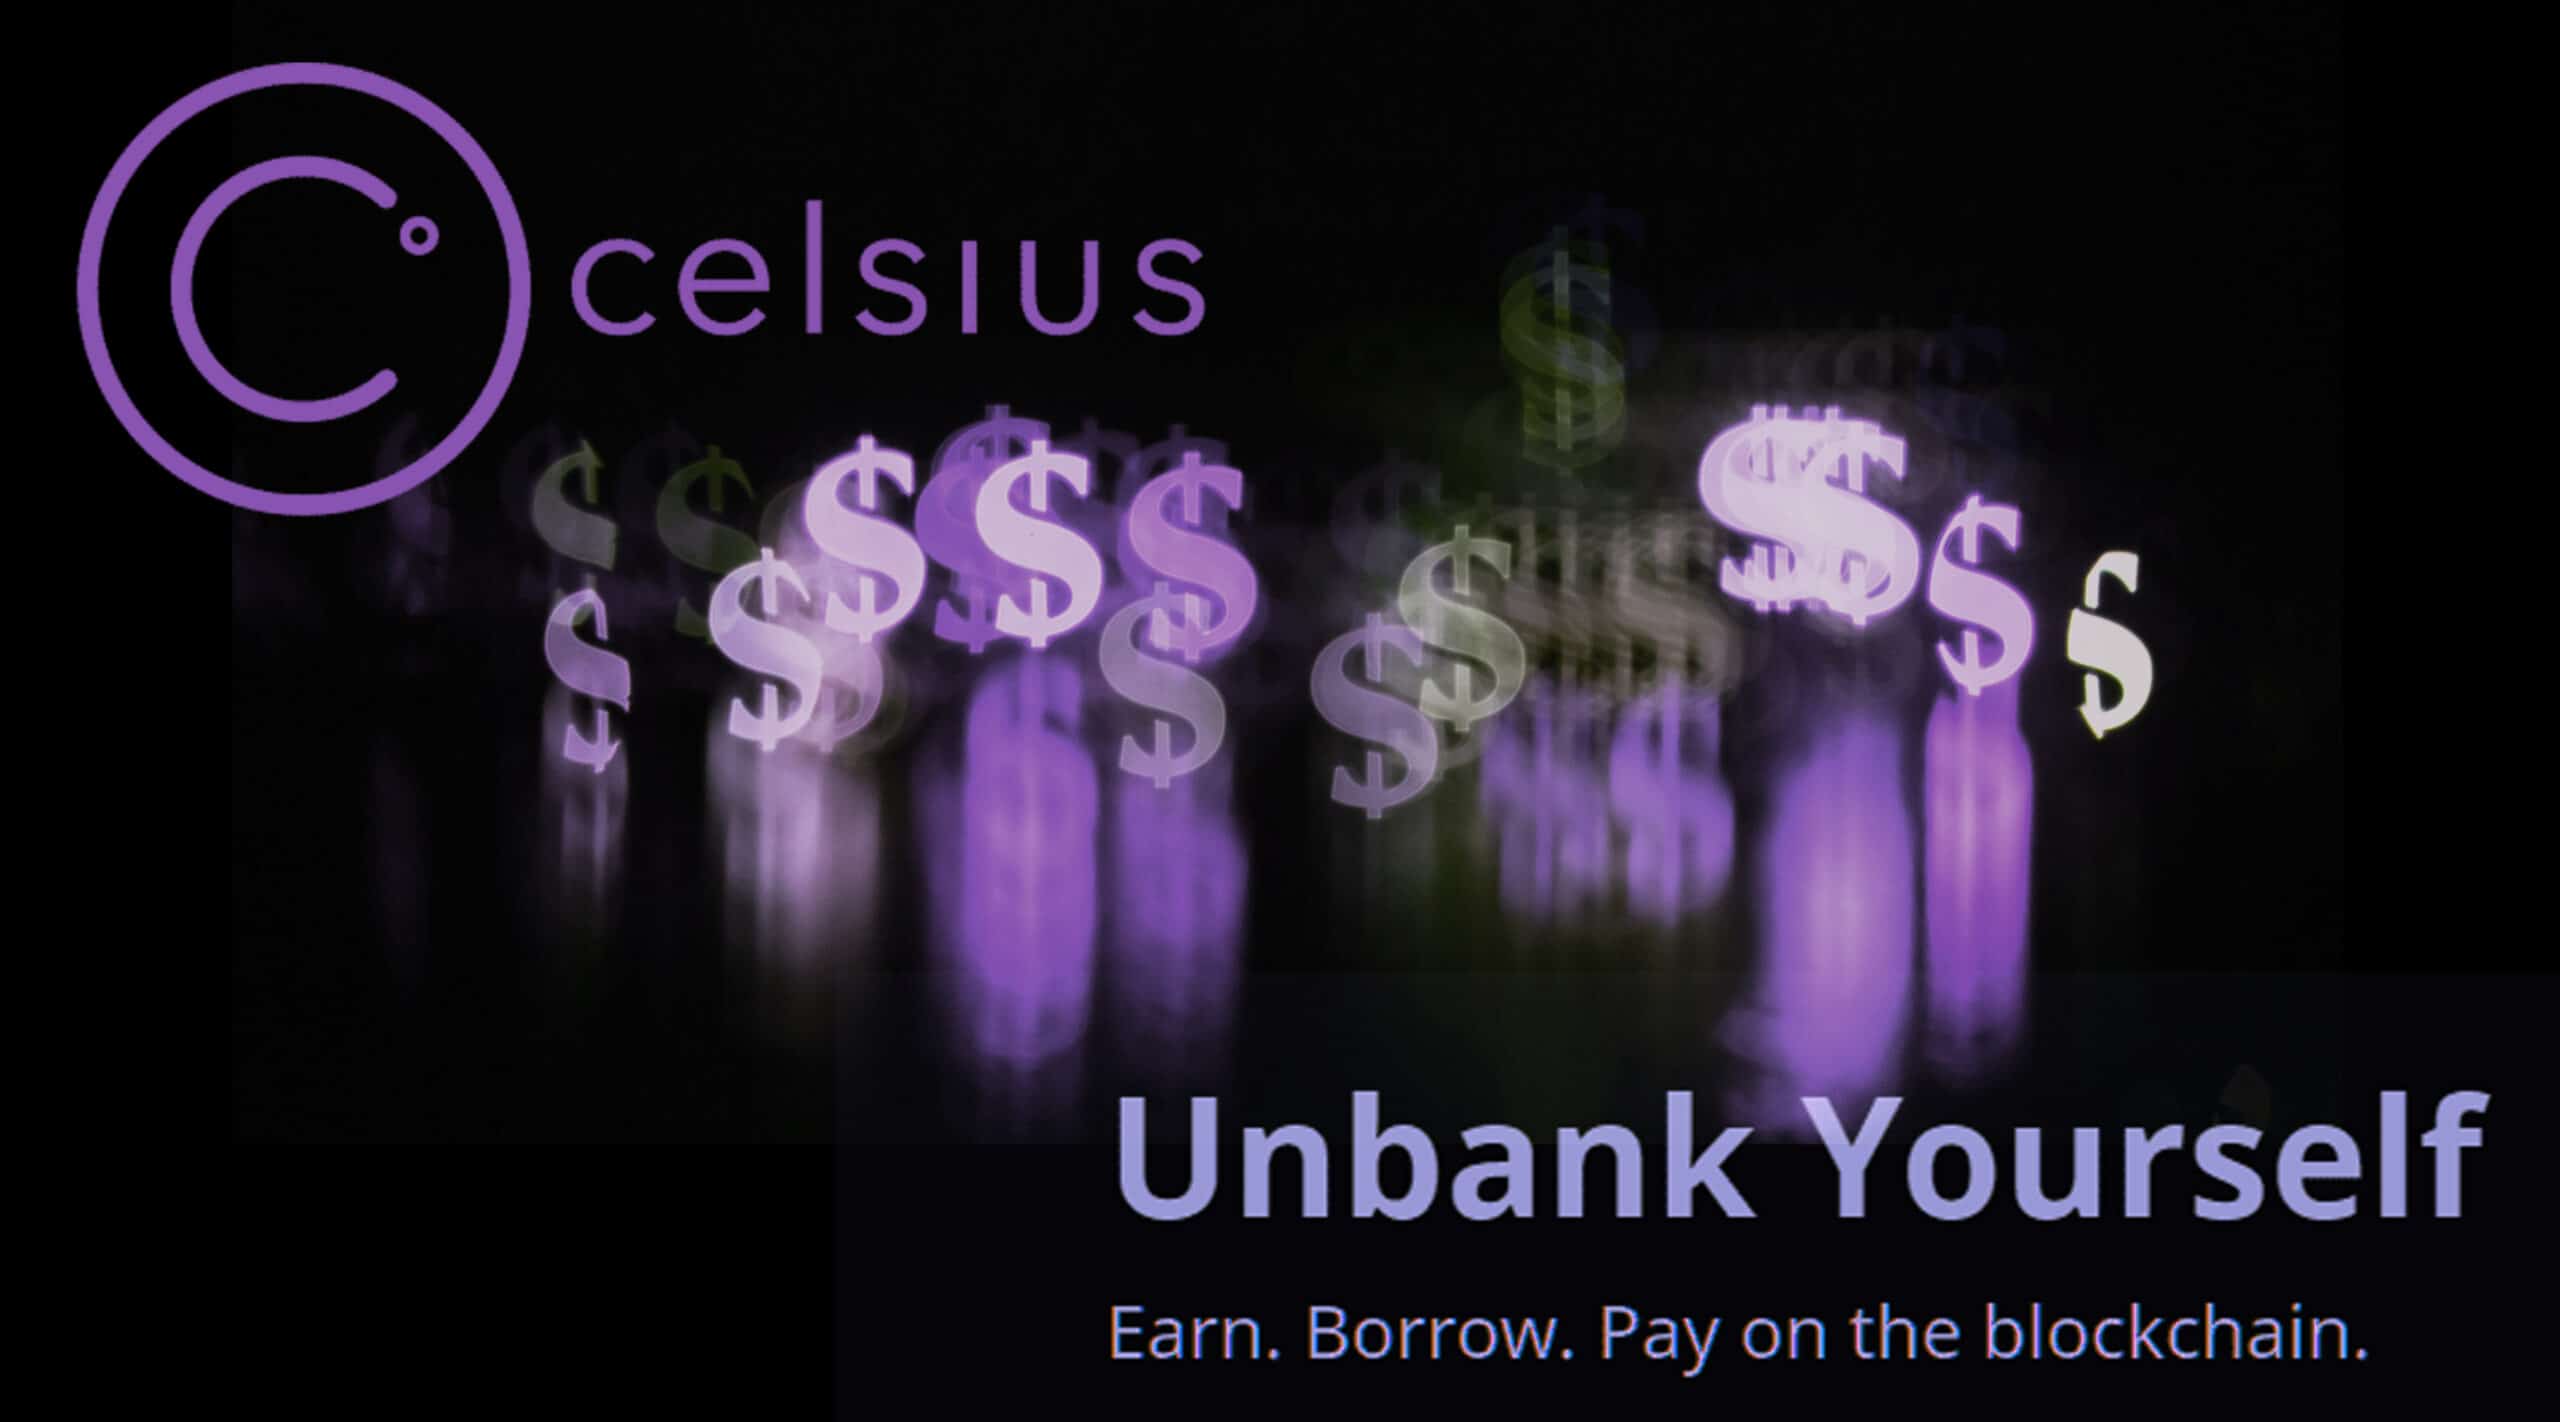 The Celsius Network. Earn. Borrow. Pay on the Blockchain.